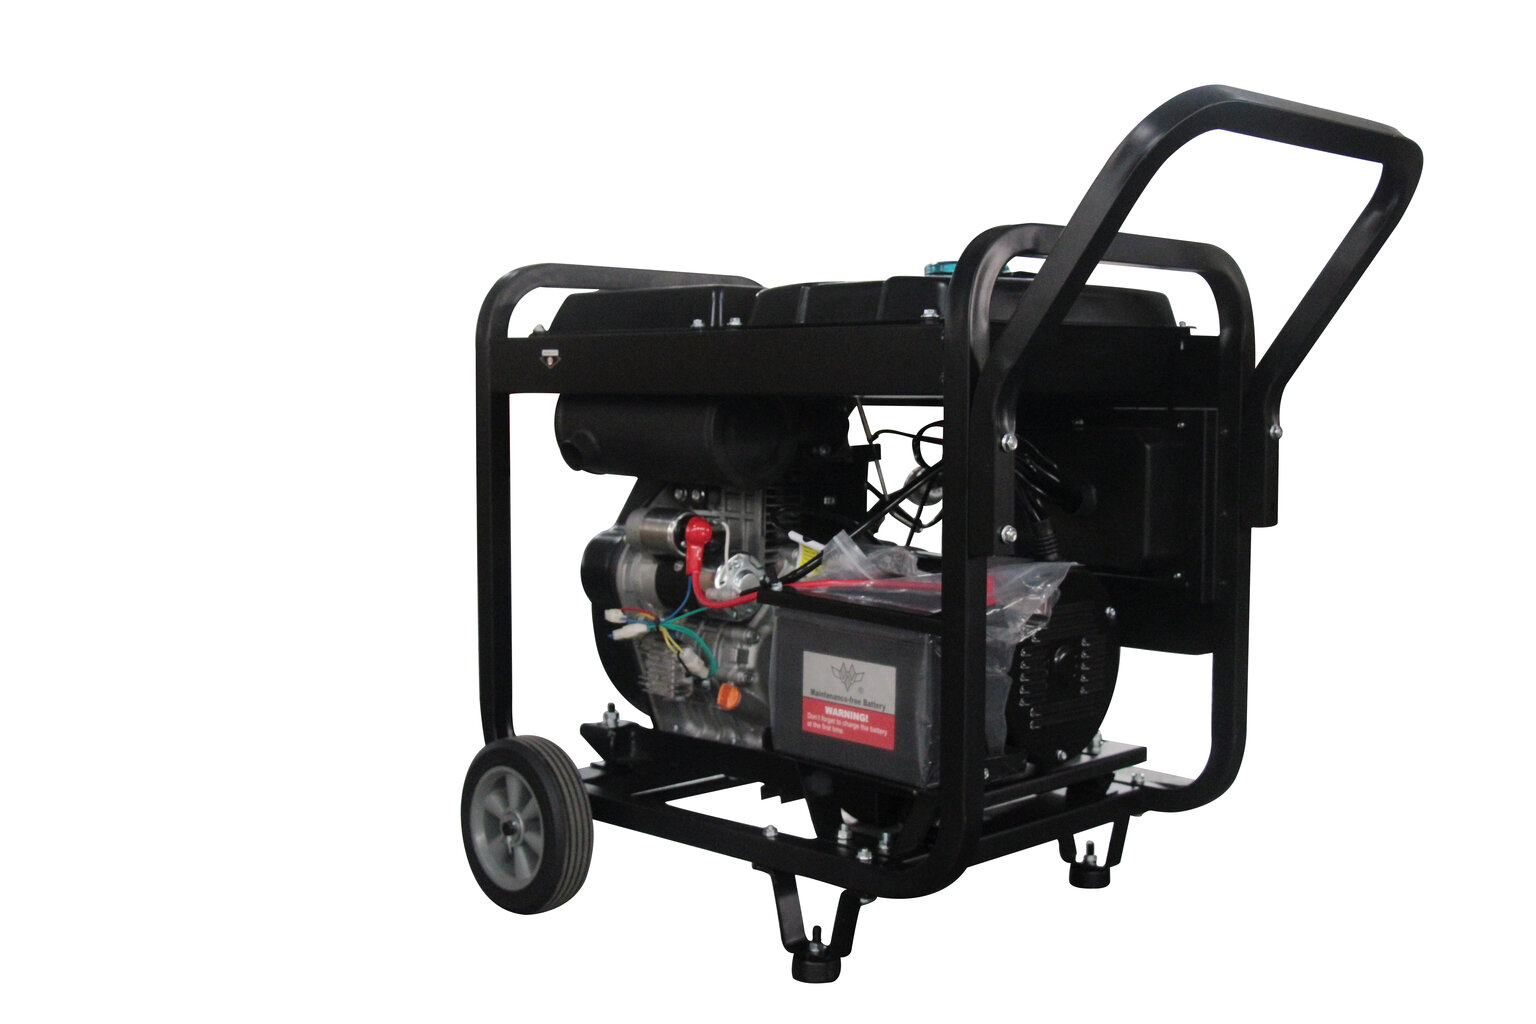 Dyzelinis generatorius E-Generaator DG8000E3 kaina ir informacija | Elektros generatoriai | pigu.lt